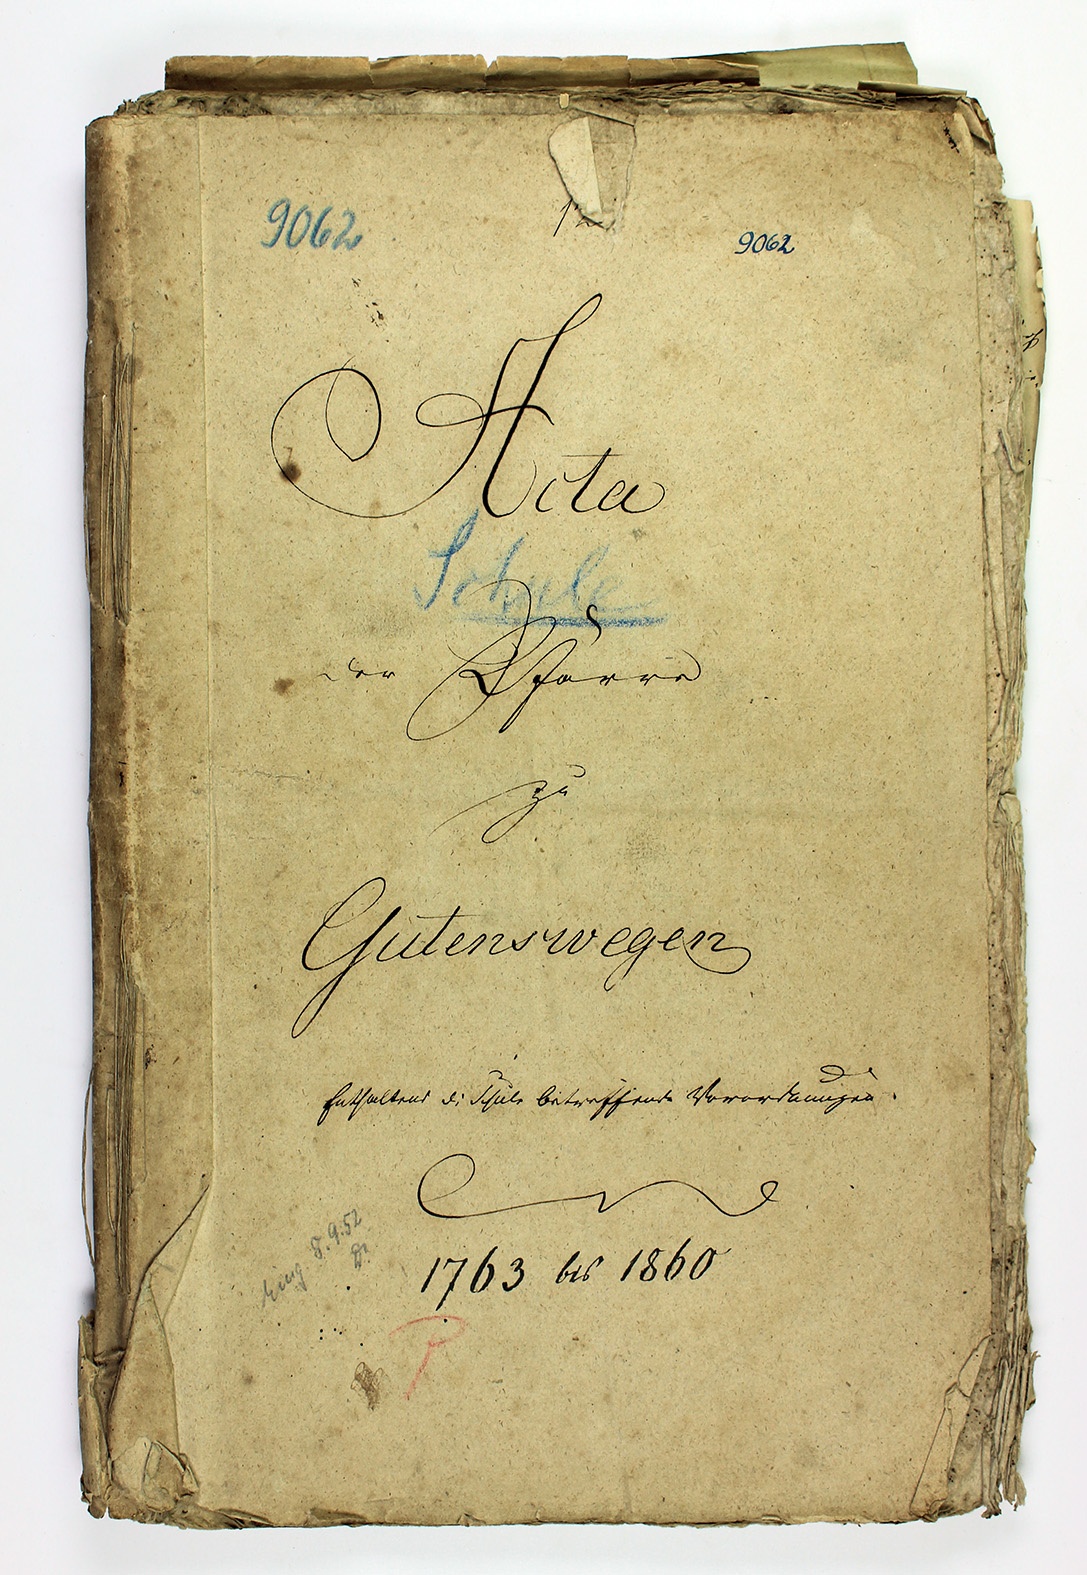 "Acta der Pfarrer zu Gutenswegen festhaltend die Schule betreffende Vermerkungen, 1763 bis 1860" (Museum Wolmirstedt RR-F)